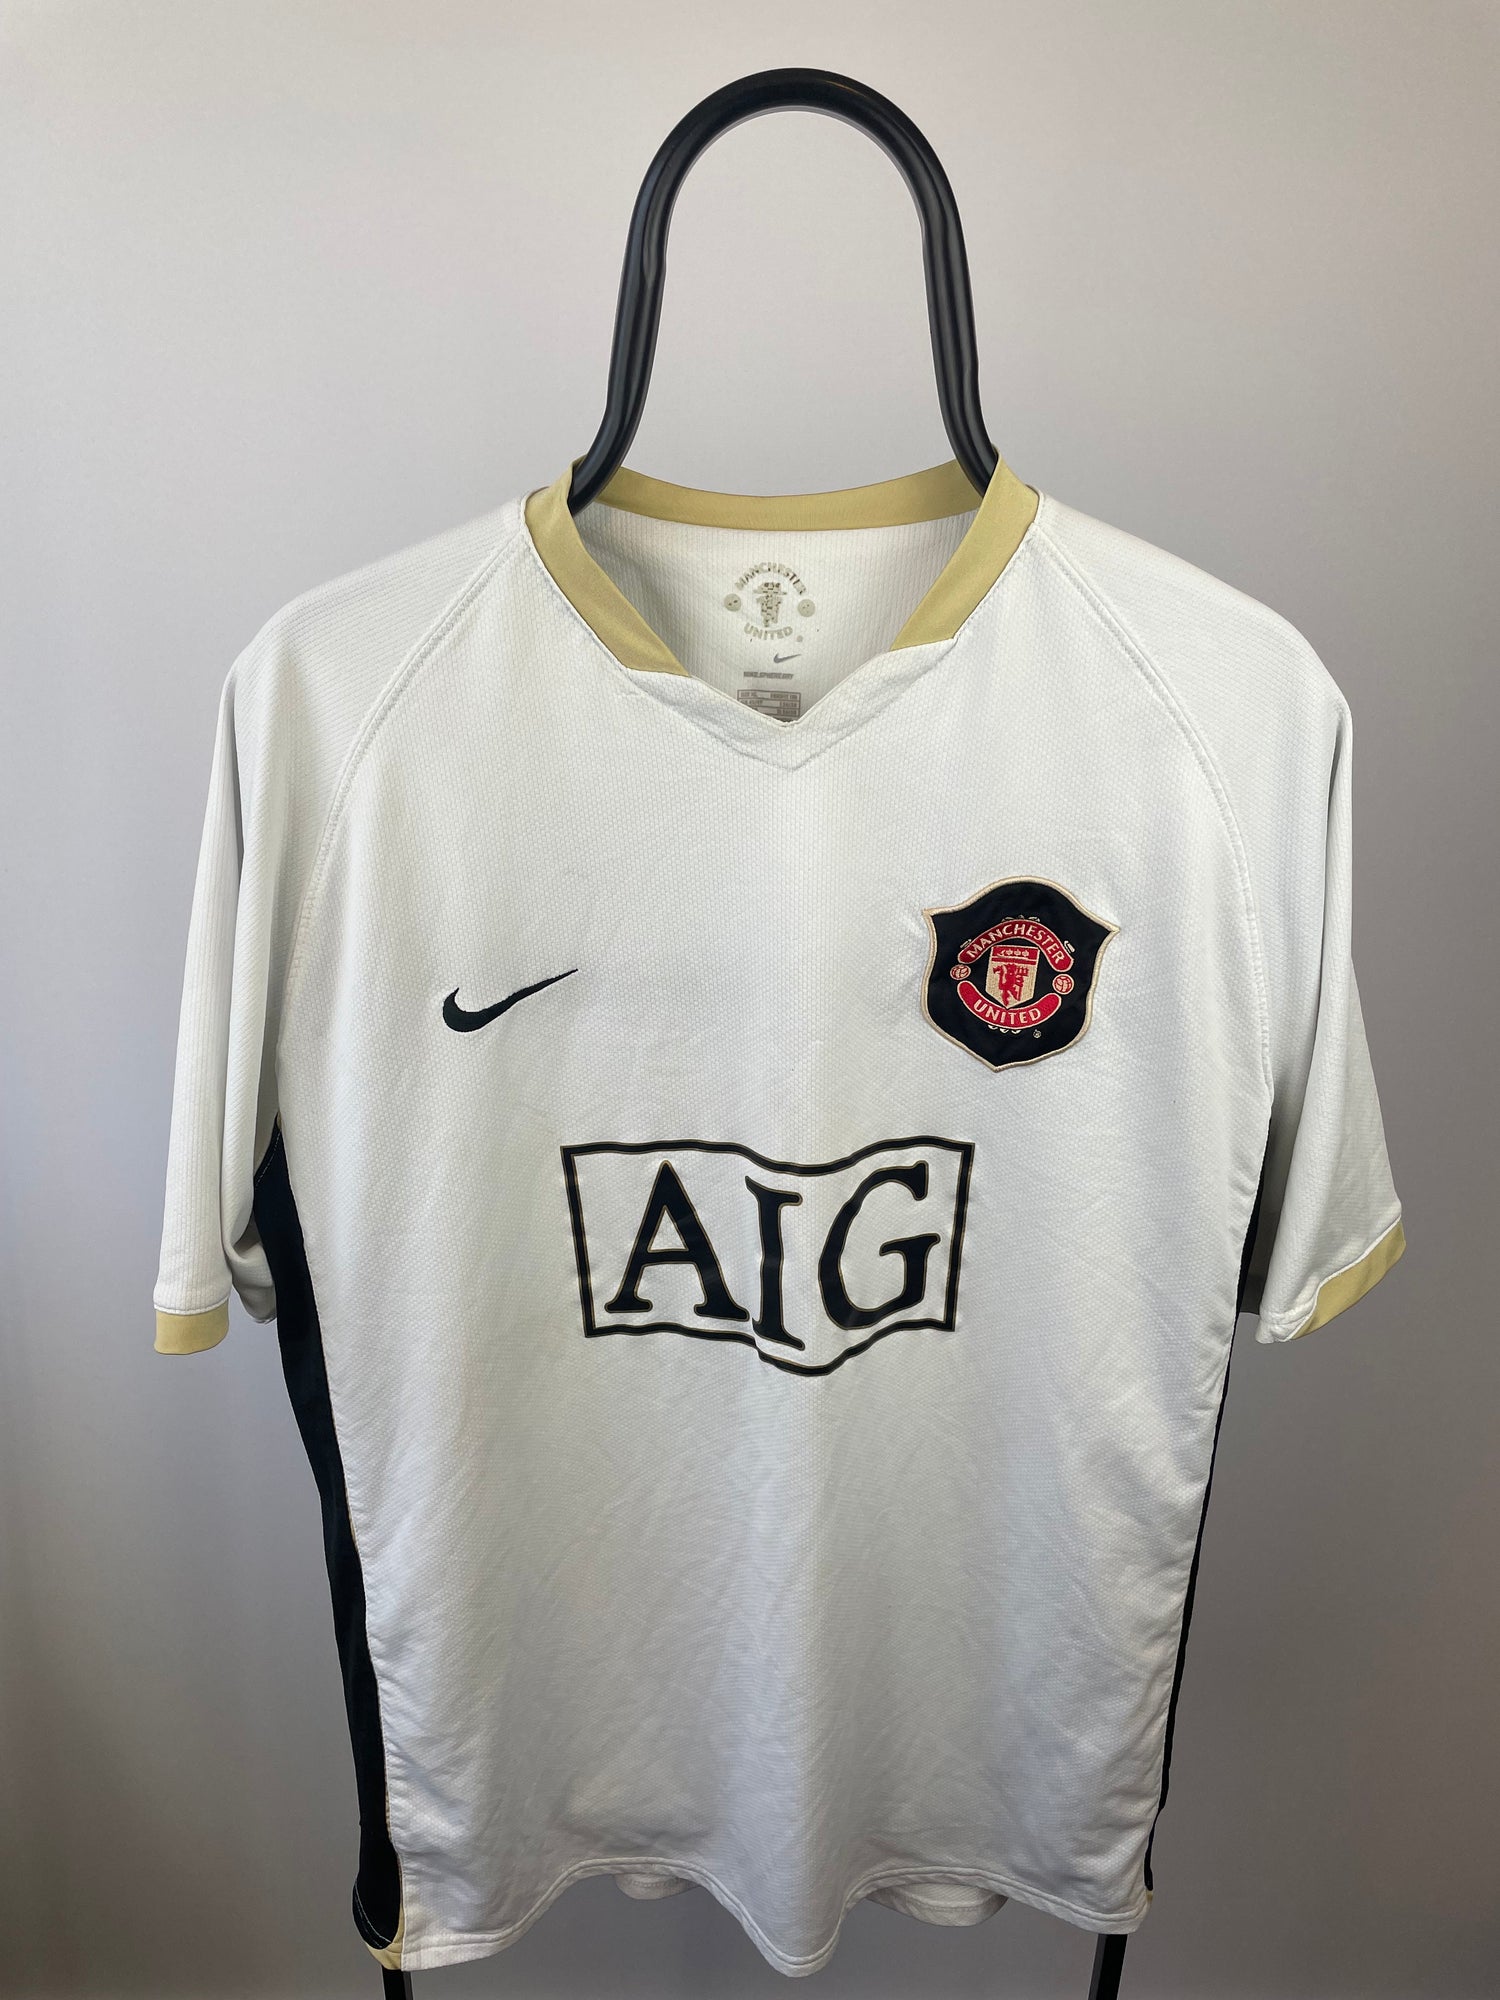 Wayne Rooney Manchester United 07/08 3 trøje - XL